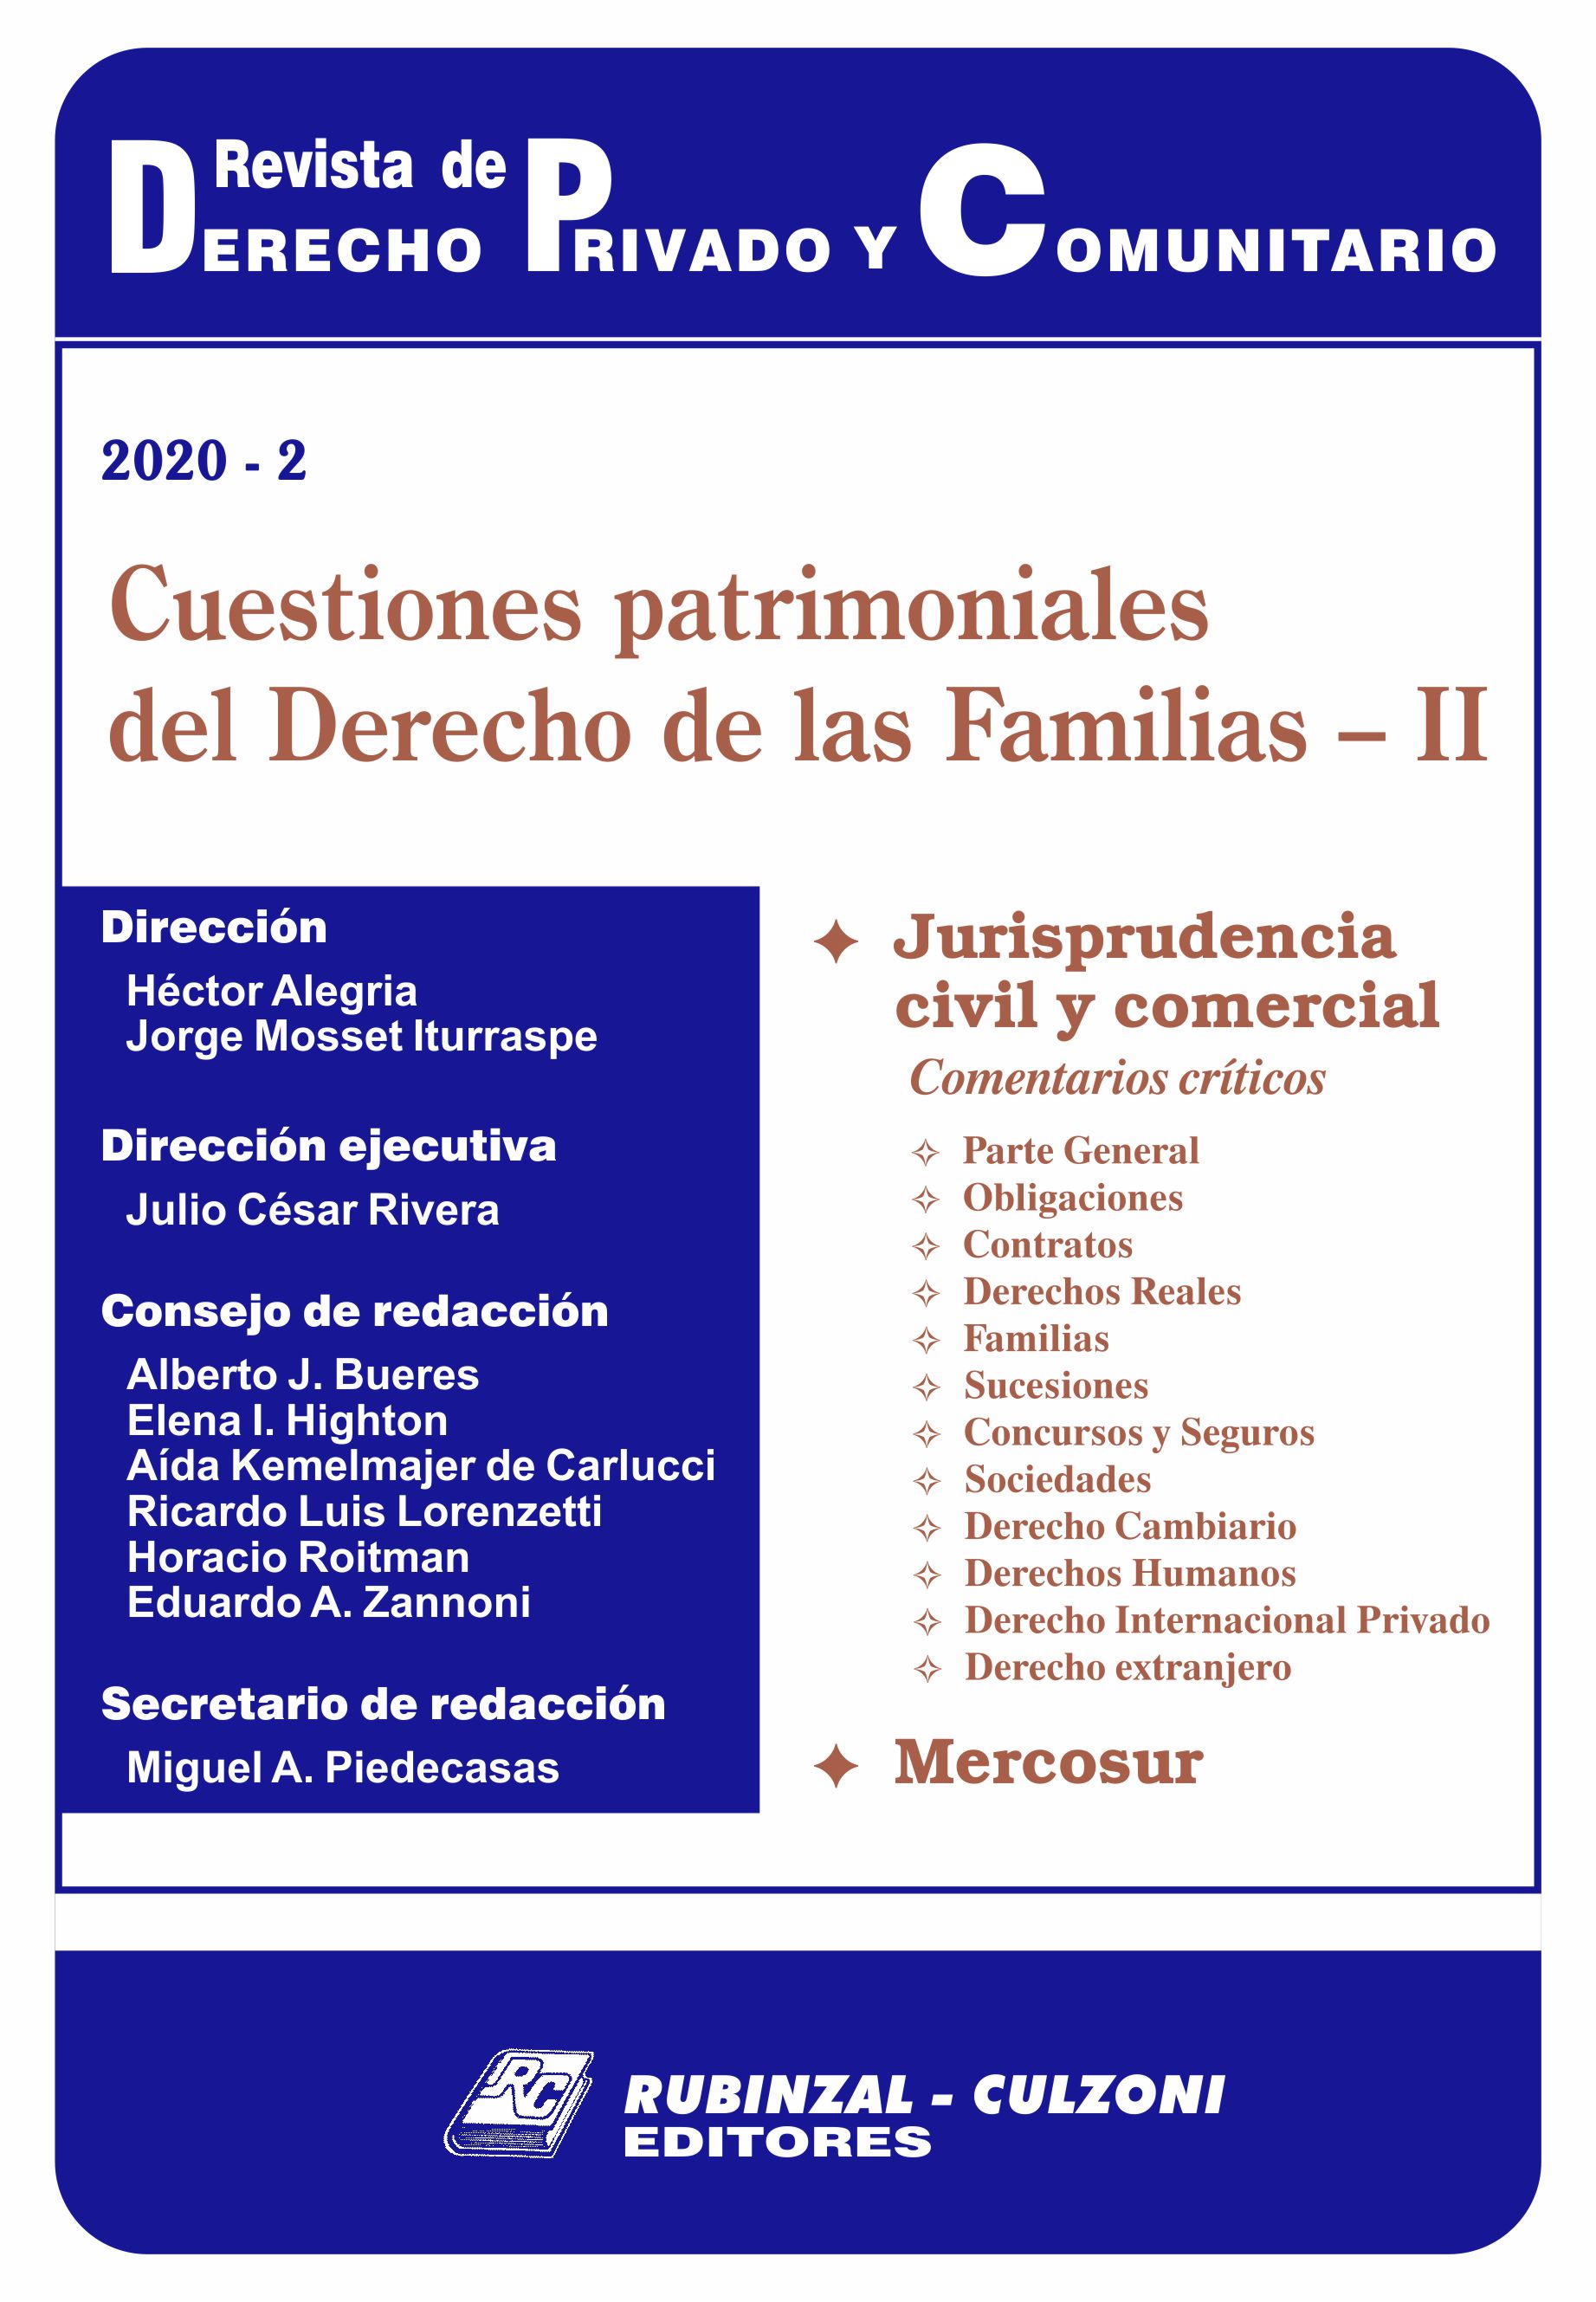 Cuestiones patrimoniales del Derecho de las Familias - II [2020-2]